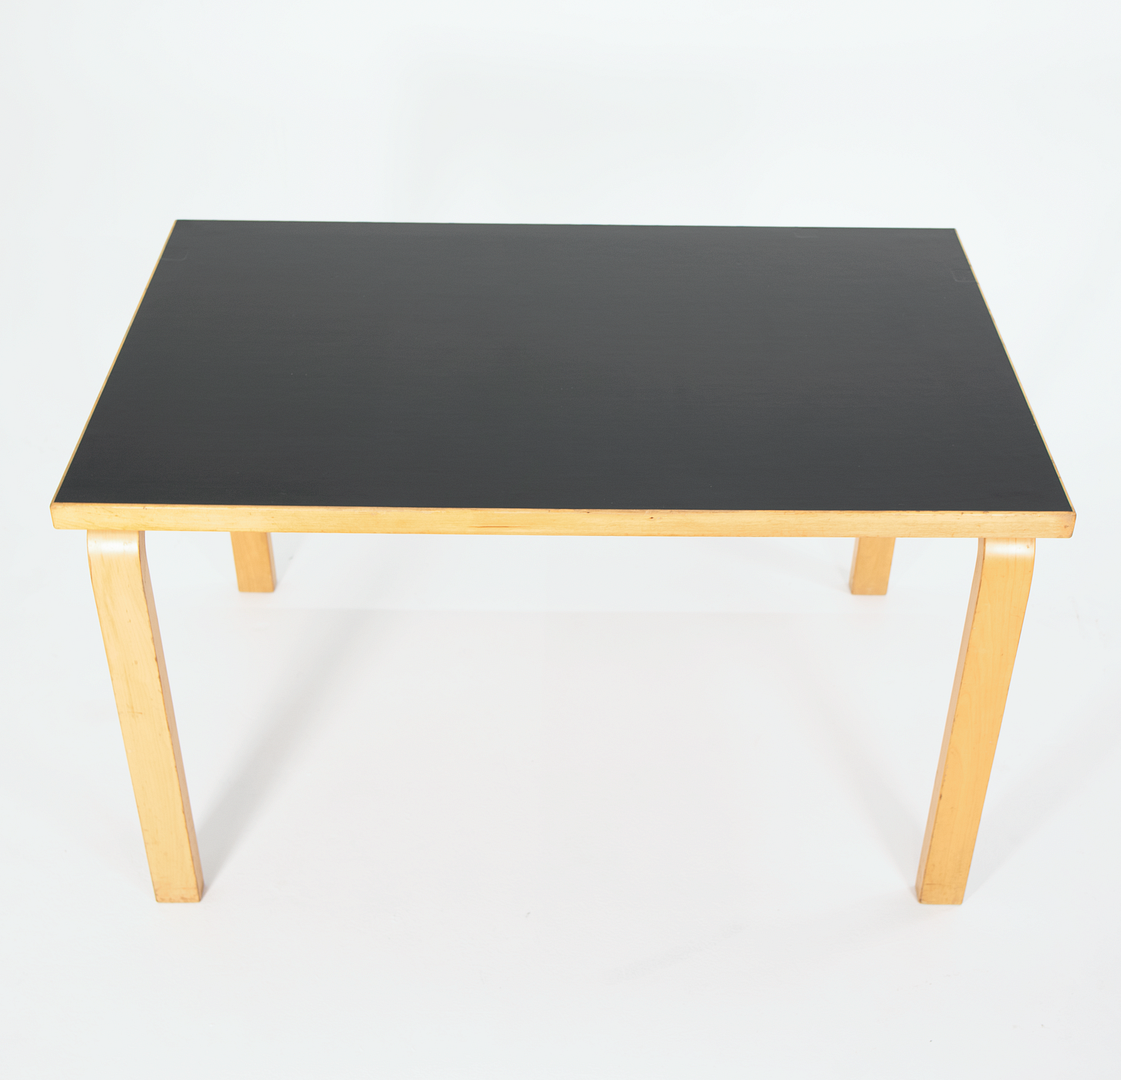 1950S L-Leg Table, Model 81B By Aino and Alvar Aalto For Artek in Birch